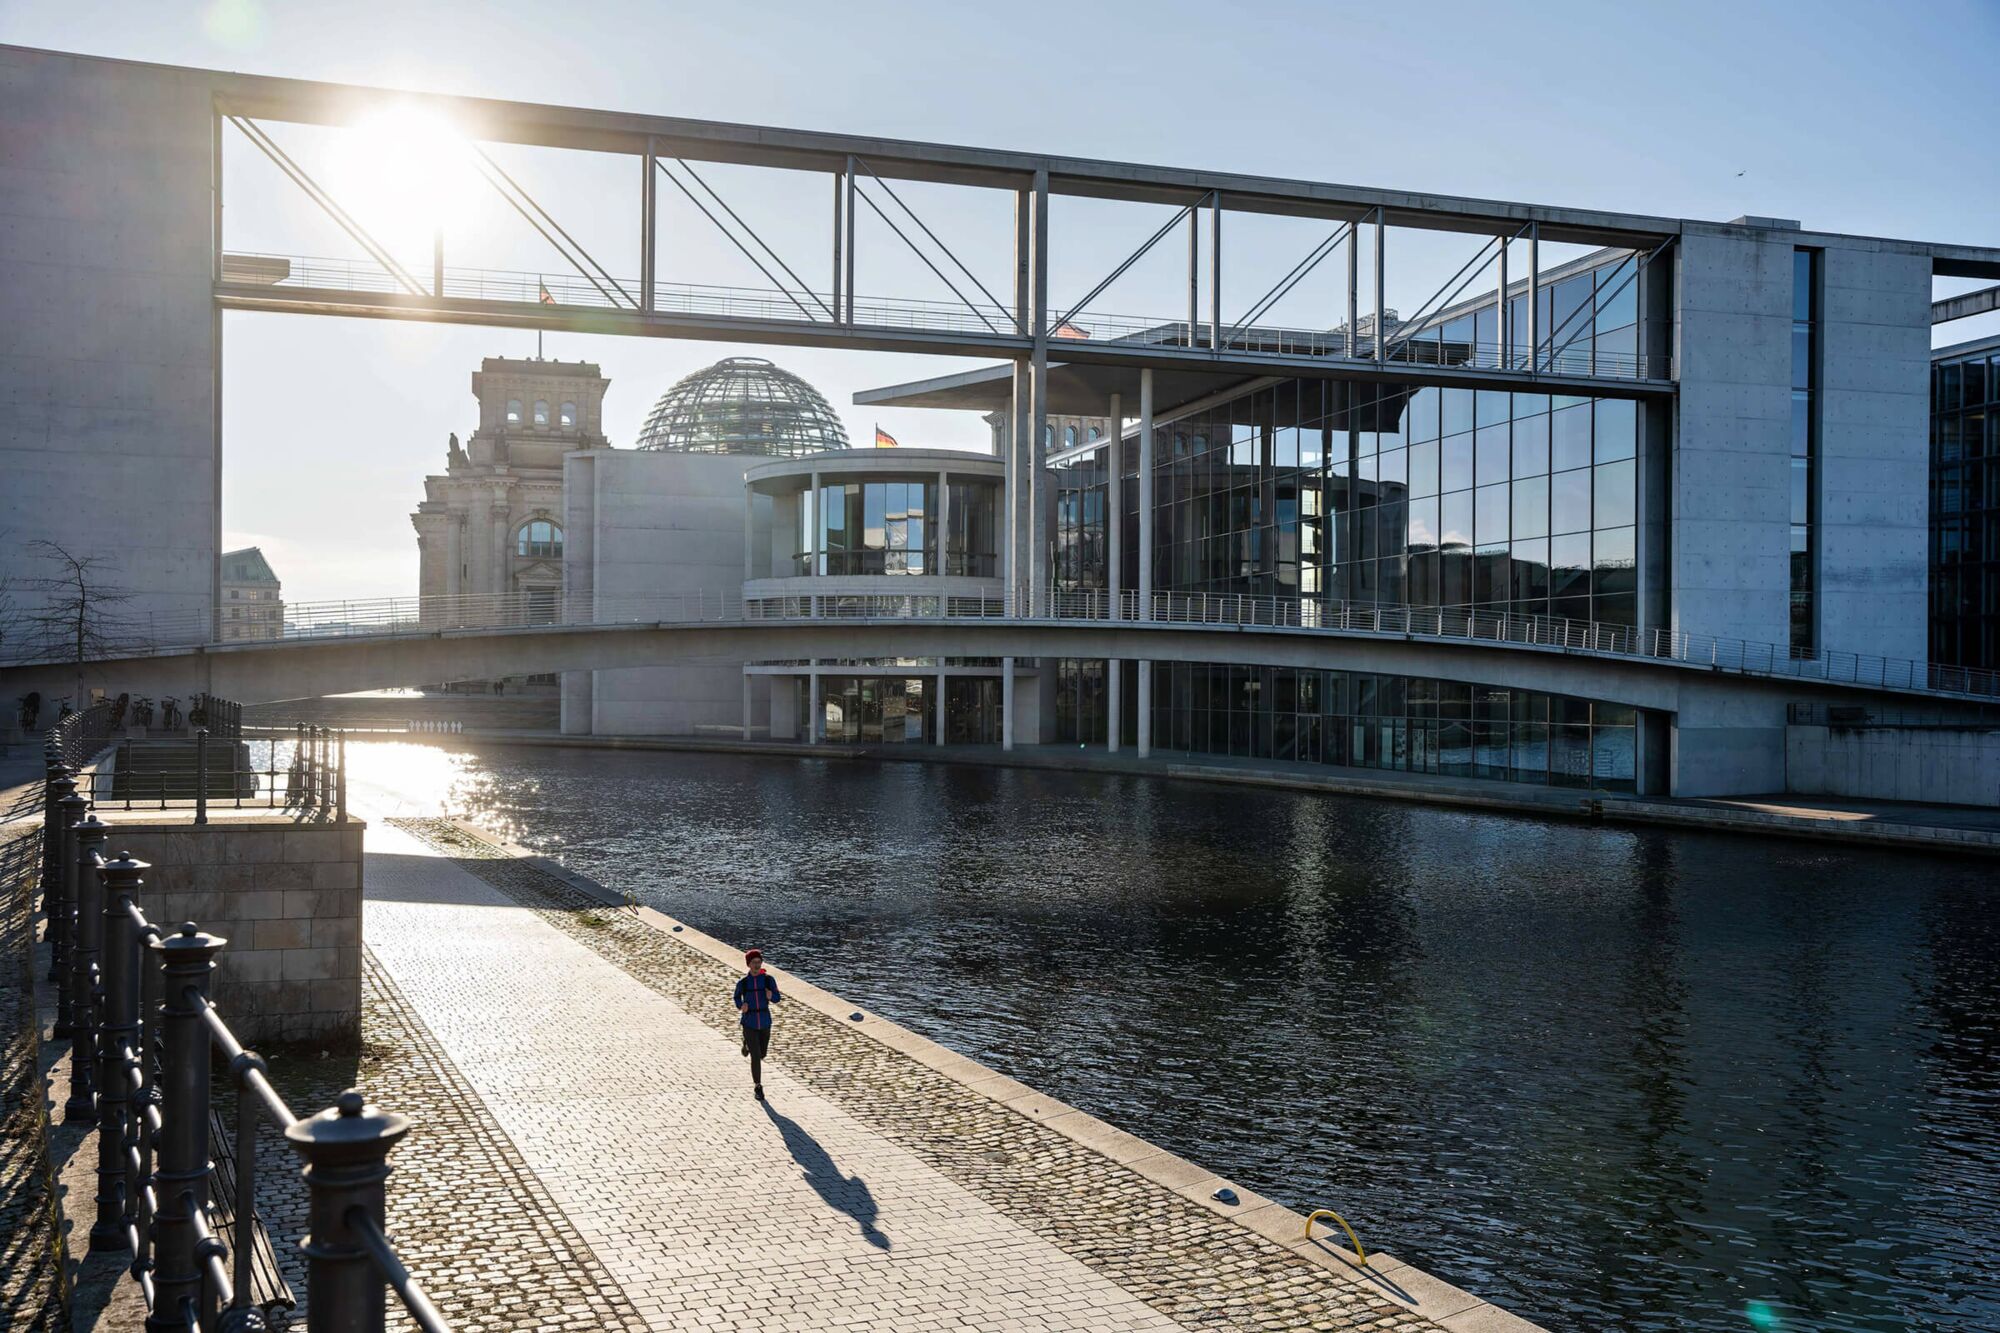 Das Foto zeigt den Reichstag und das Paul-Löbe-Haus im Berliner Regierungsviertel, wo der Petitionsausschuss über die Zukunft der ambulanten Versorgung berät.